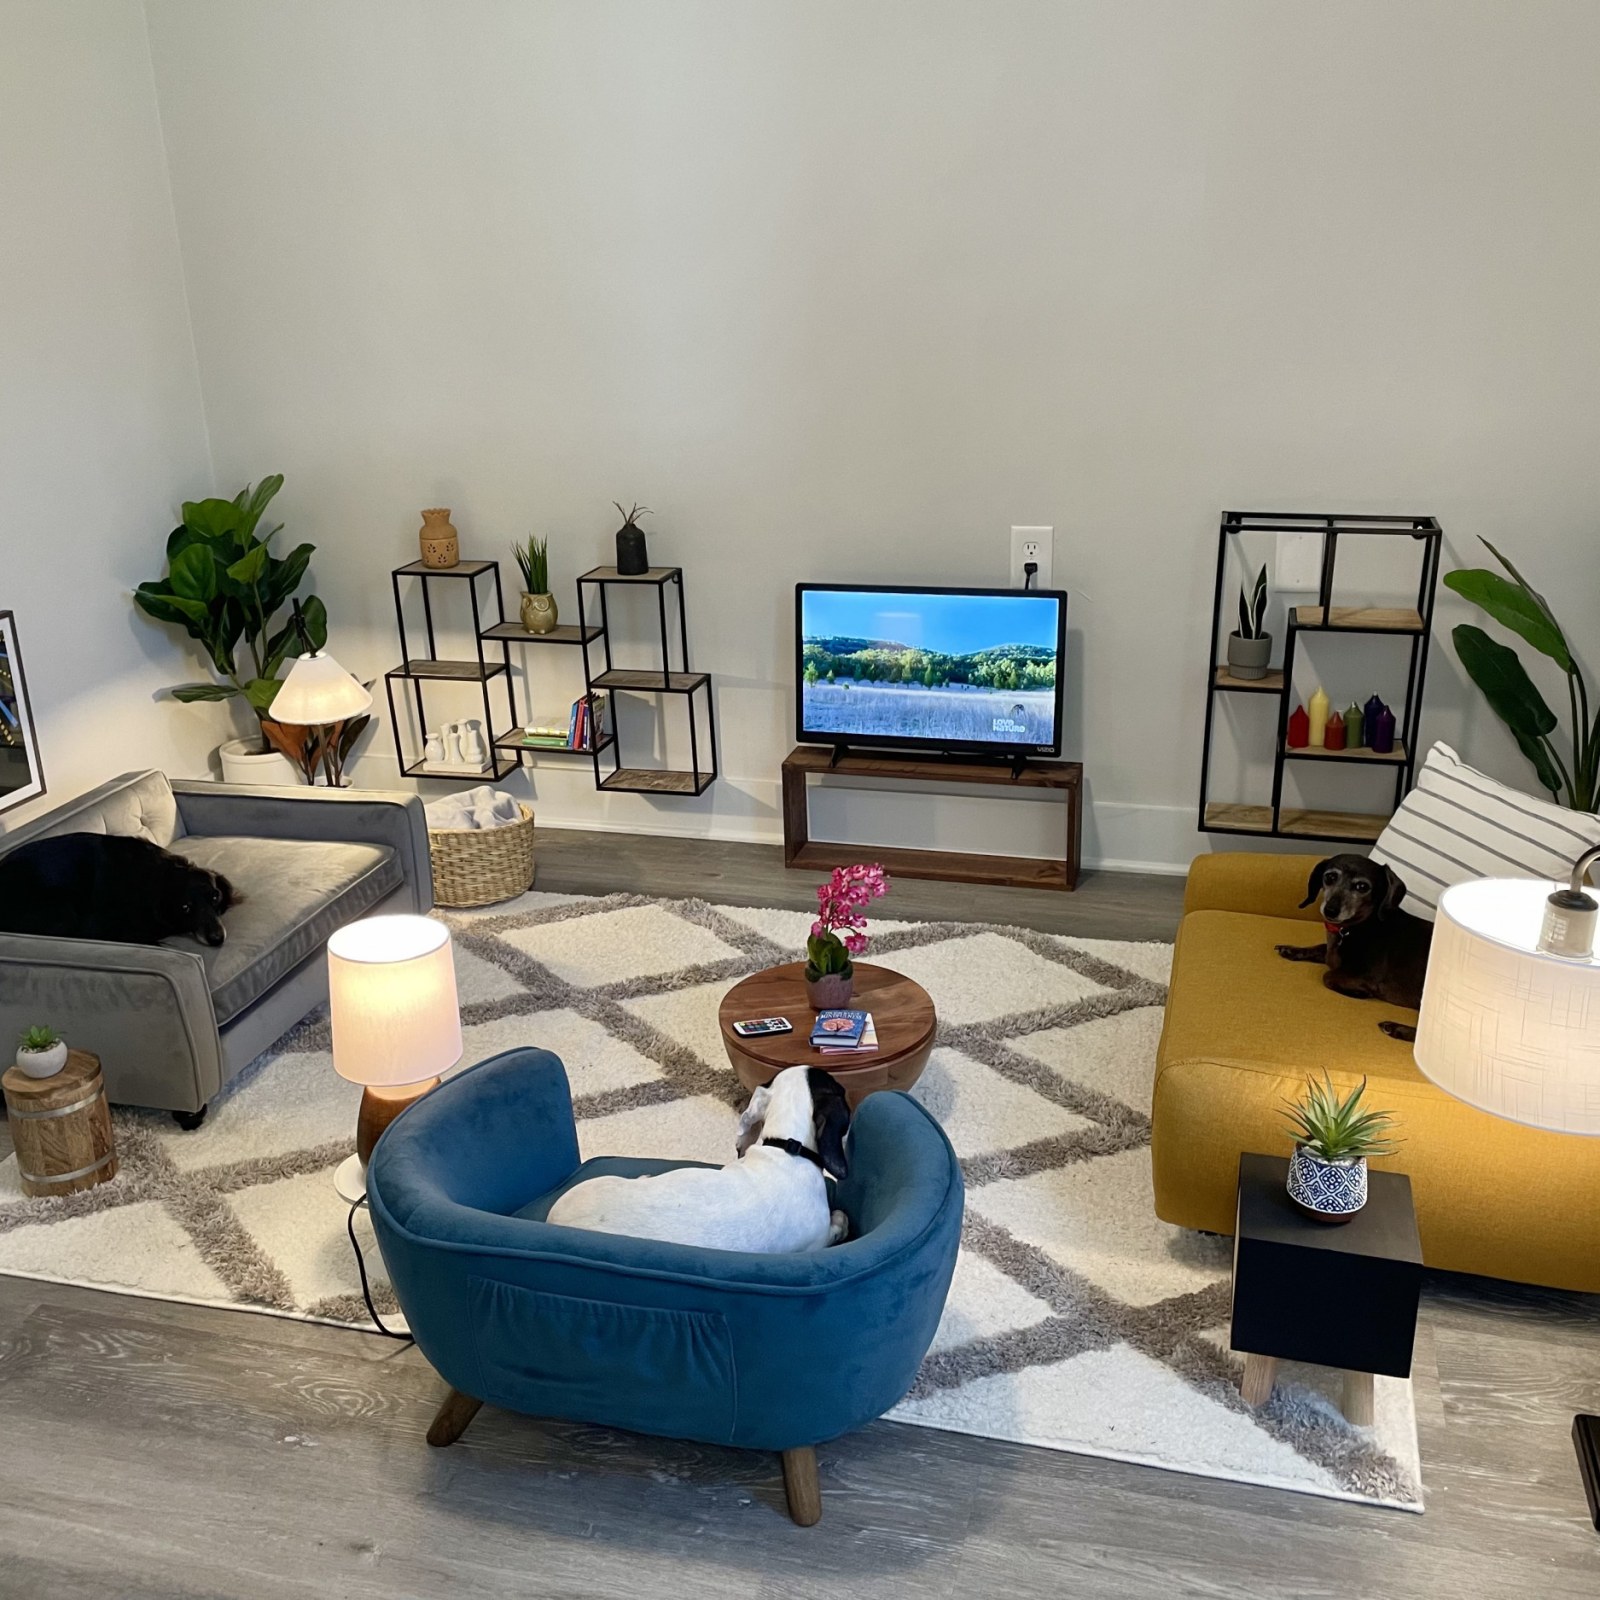 Owner Builds Impressive Living Room For